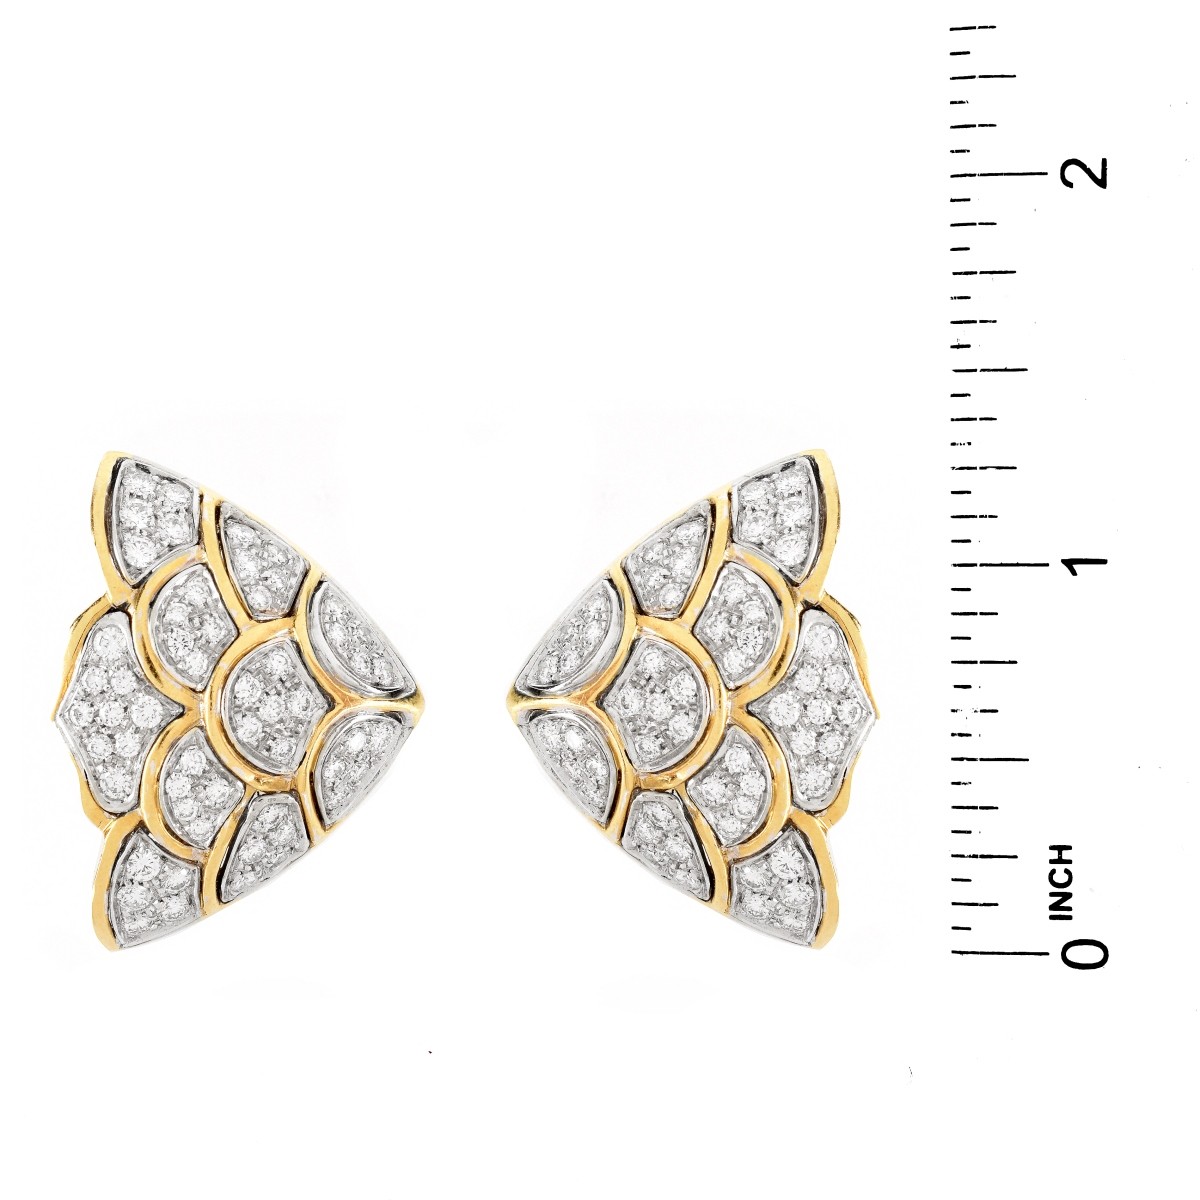 Vintage Diamond and 18K Earrings